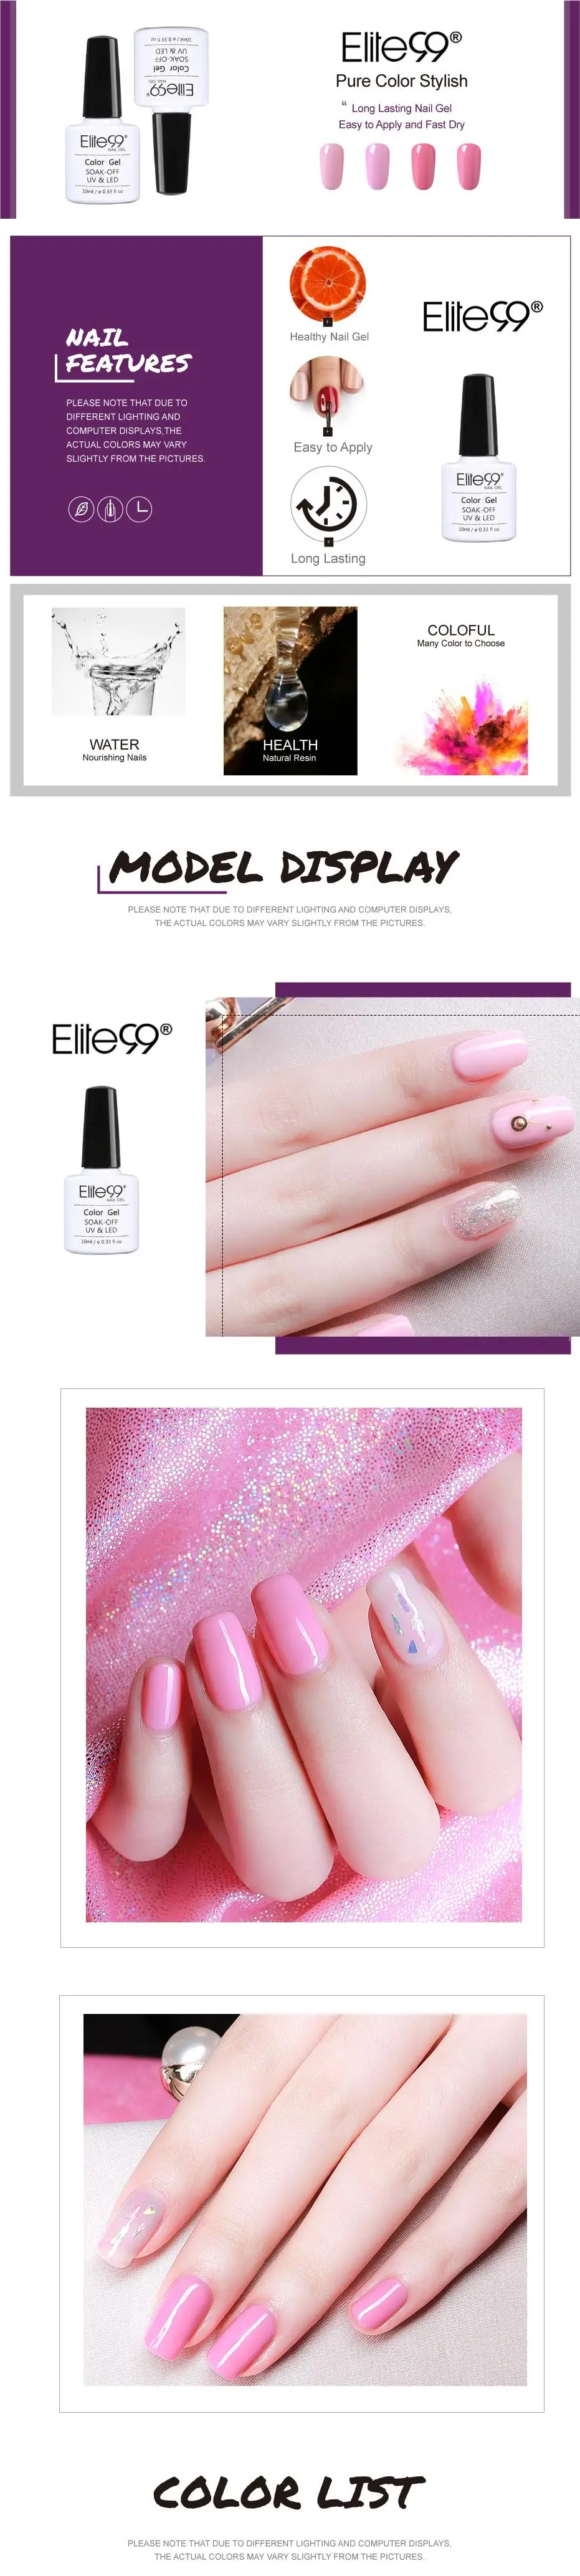 Elite99 10 мл розовый цвет УФ Гель-лак Полупостоянный праймер верхнее покрытие гель лак для ногтей, маникюр гель лак для ногтей